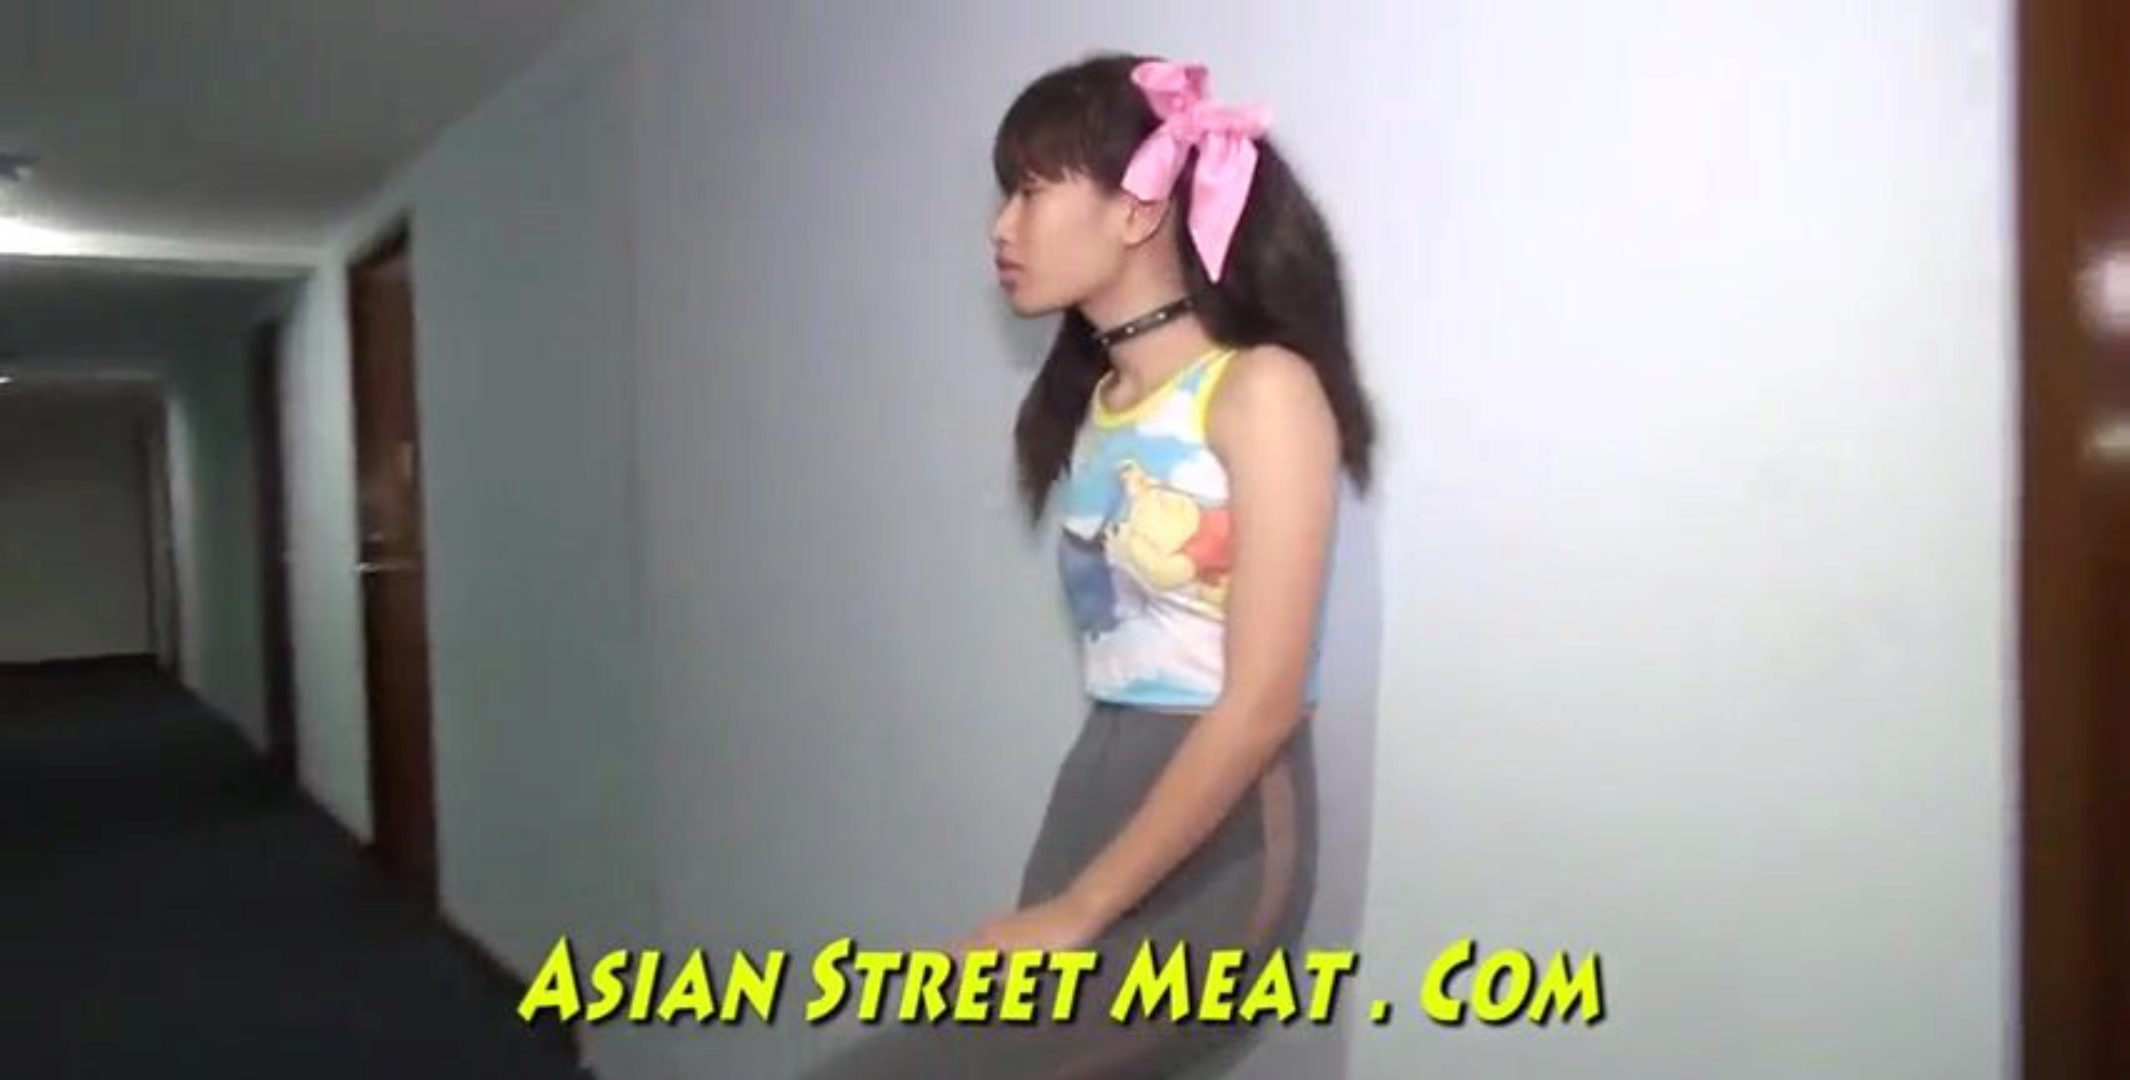 Alle Små Titte Thai Jente Buggered Opp Botty Asiatisk Street Ameatcom bilde